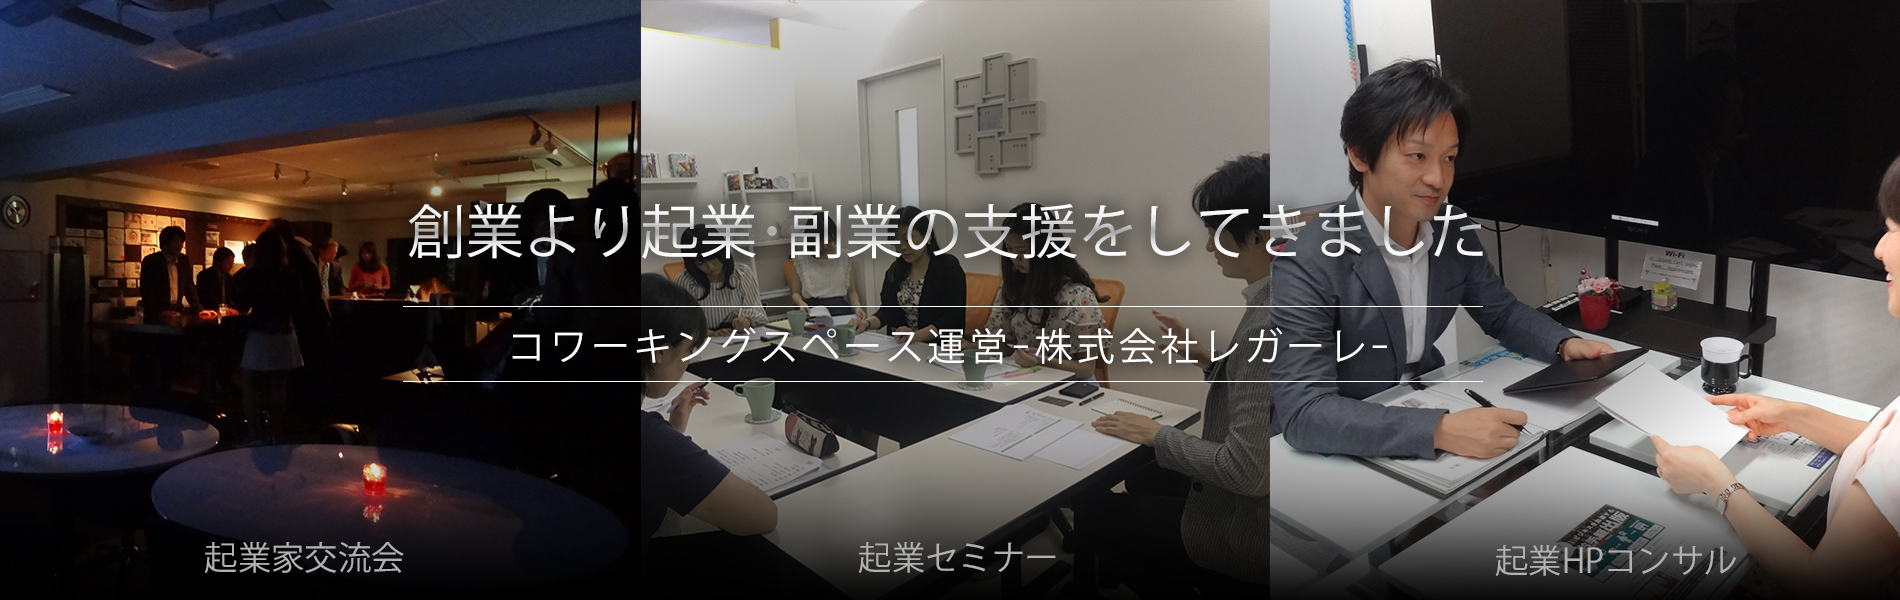 名古屋の起業副業セミナー講座の株式会社レガーレ